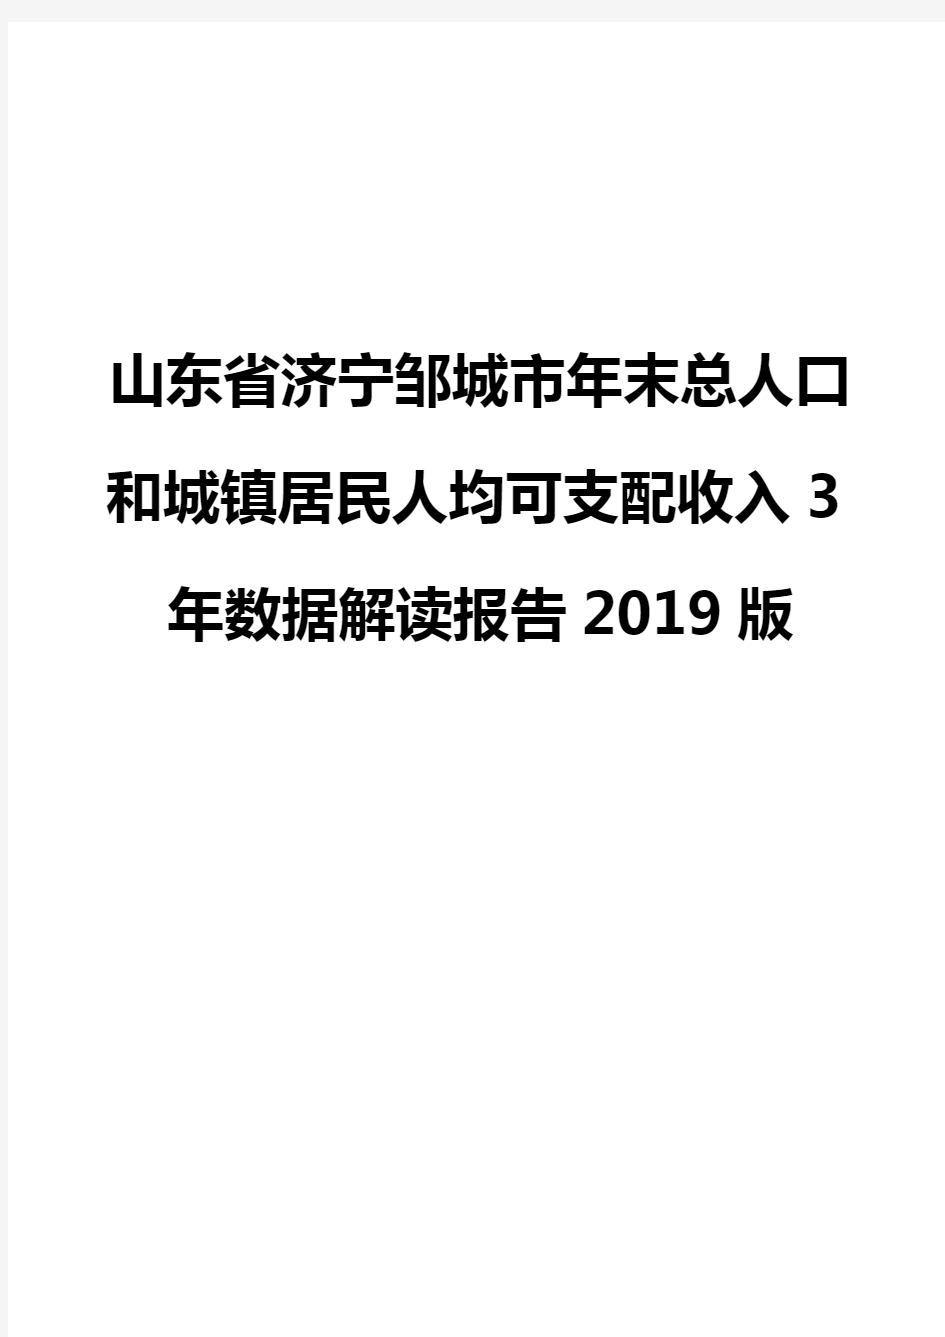 山东省济宁邹城市年末总人口和城镇居民人均可支配收入3年数据解读报告2019版